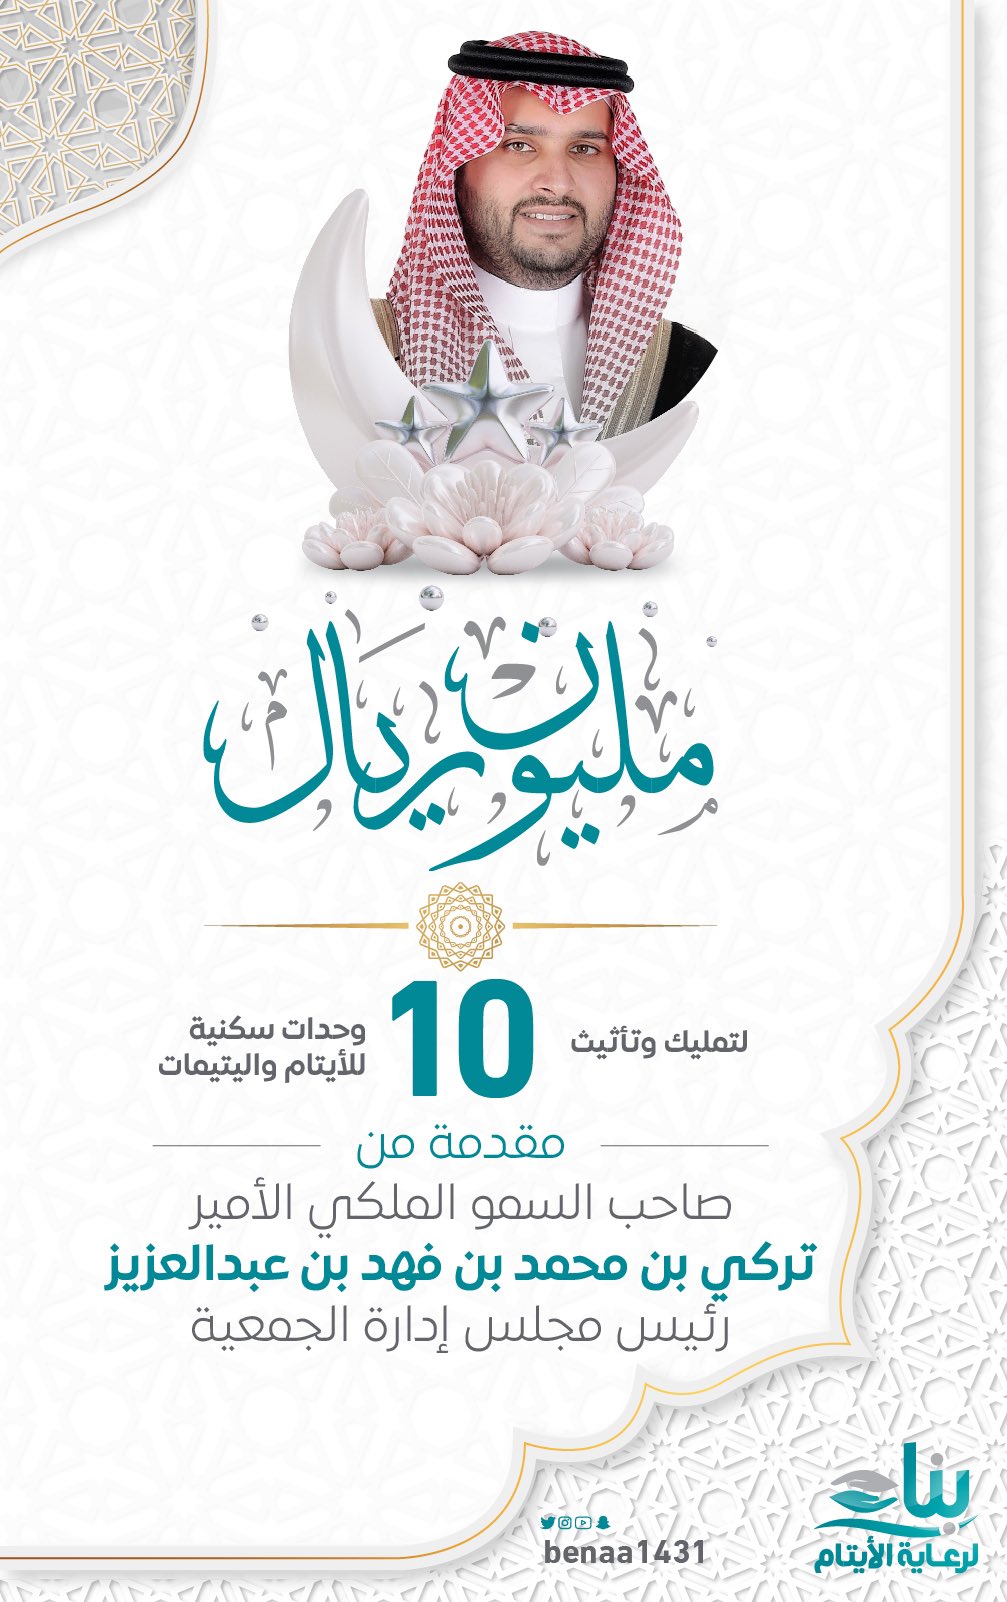 سمو الأمير تركي بن محمد بن فهد يتكفل بإكمال الحملة الأولى لمشروع المسكن الآمن